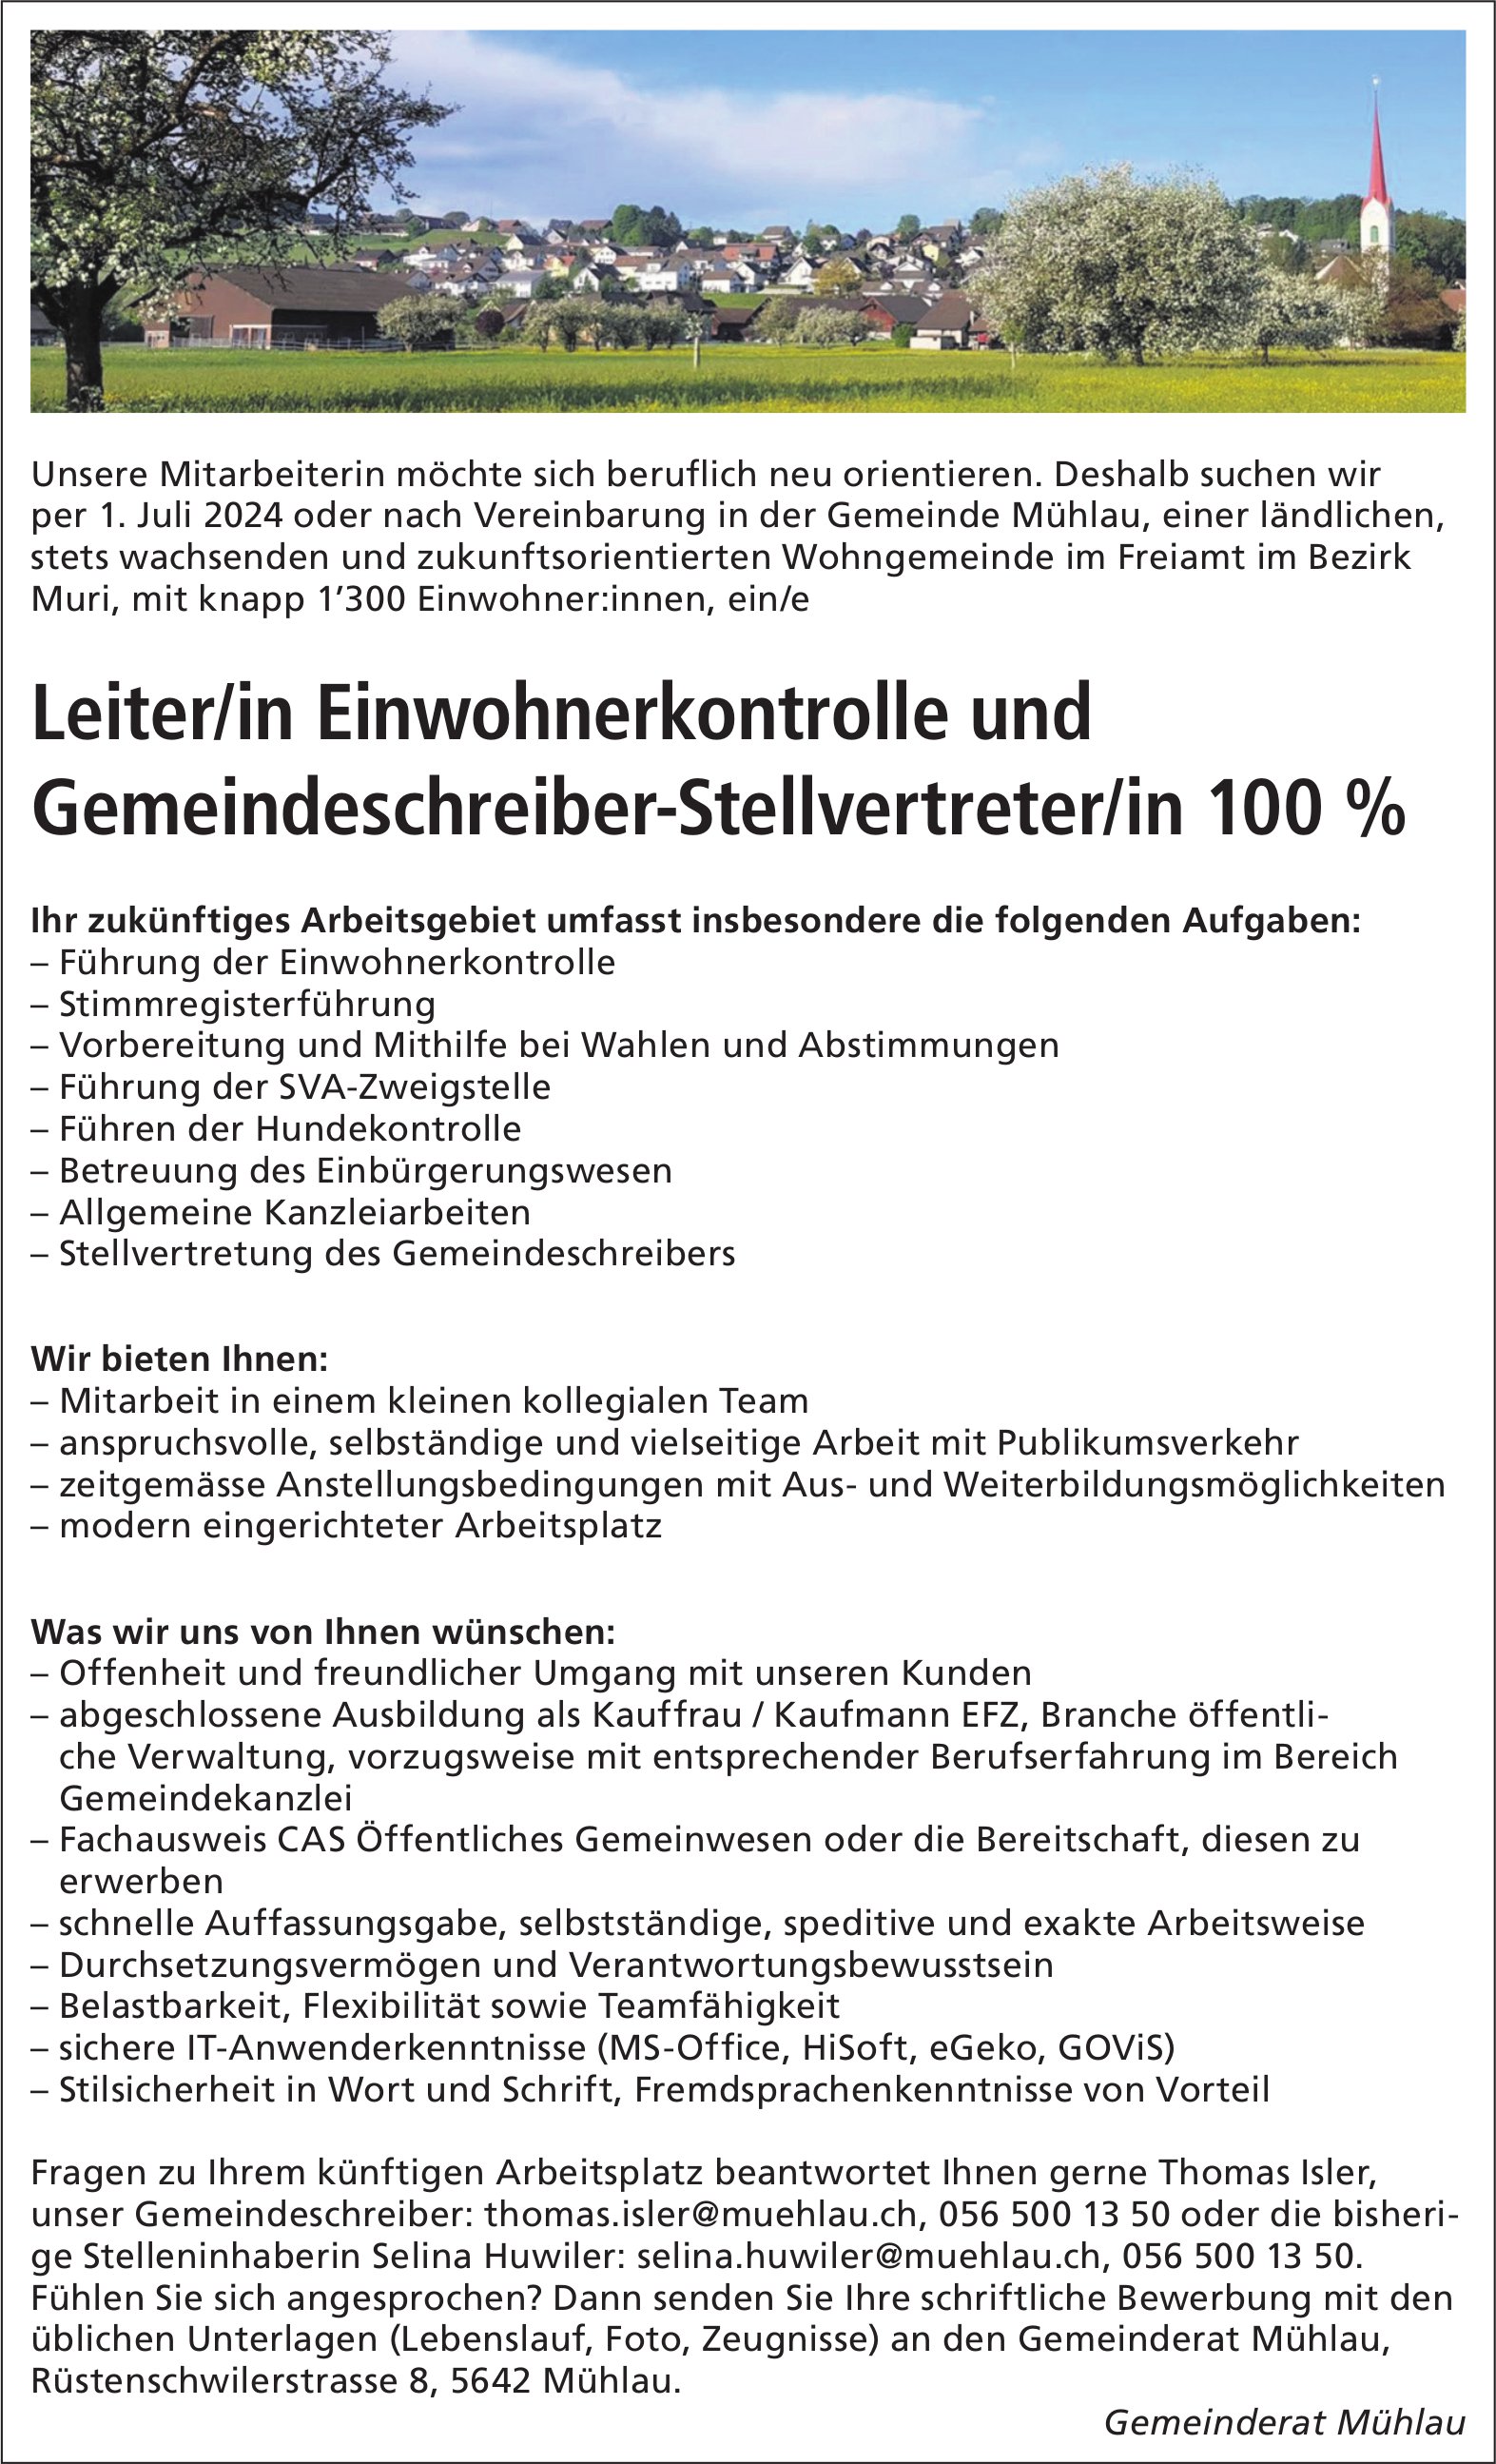 Leiter/in Einwohnerkontrolle und Gemeindeschreiber-Stellvertreter/in 100%, Gemeinde, Mühlau, gesucht